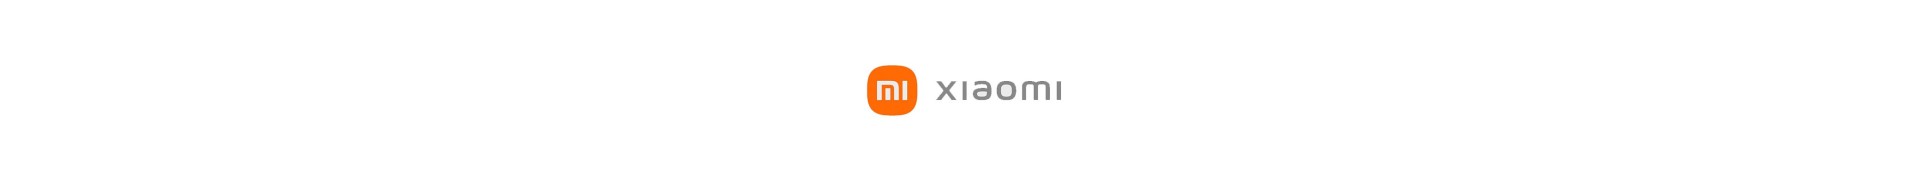 XiaoMi